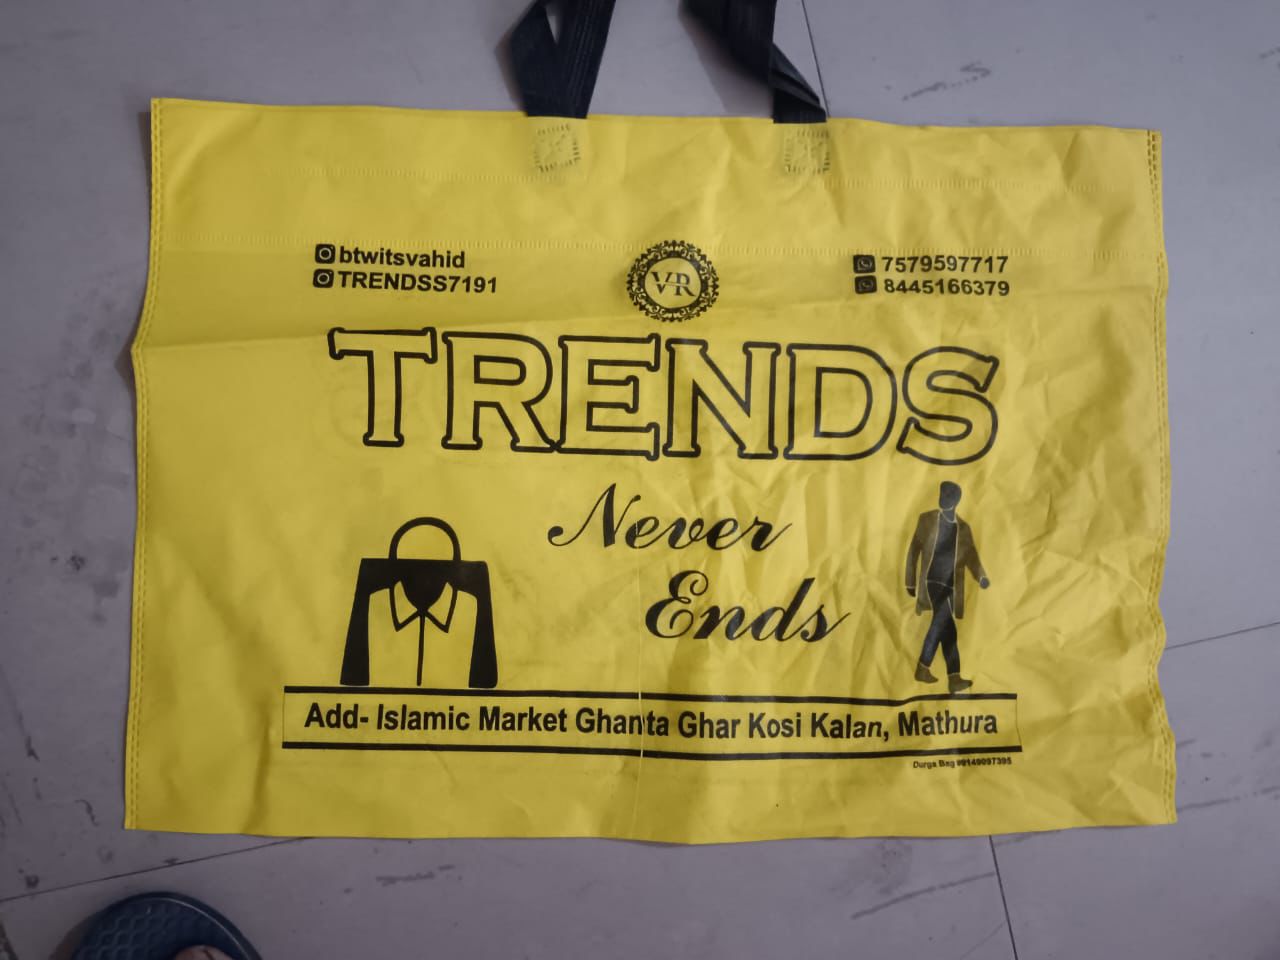 Mathura : दुकानदार ने कैरीबैग पर पंजाबी मार्केट की जगह लिखवाया ये, लोगों का फूटा गुस्सा